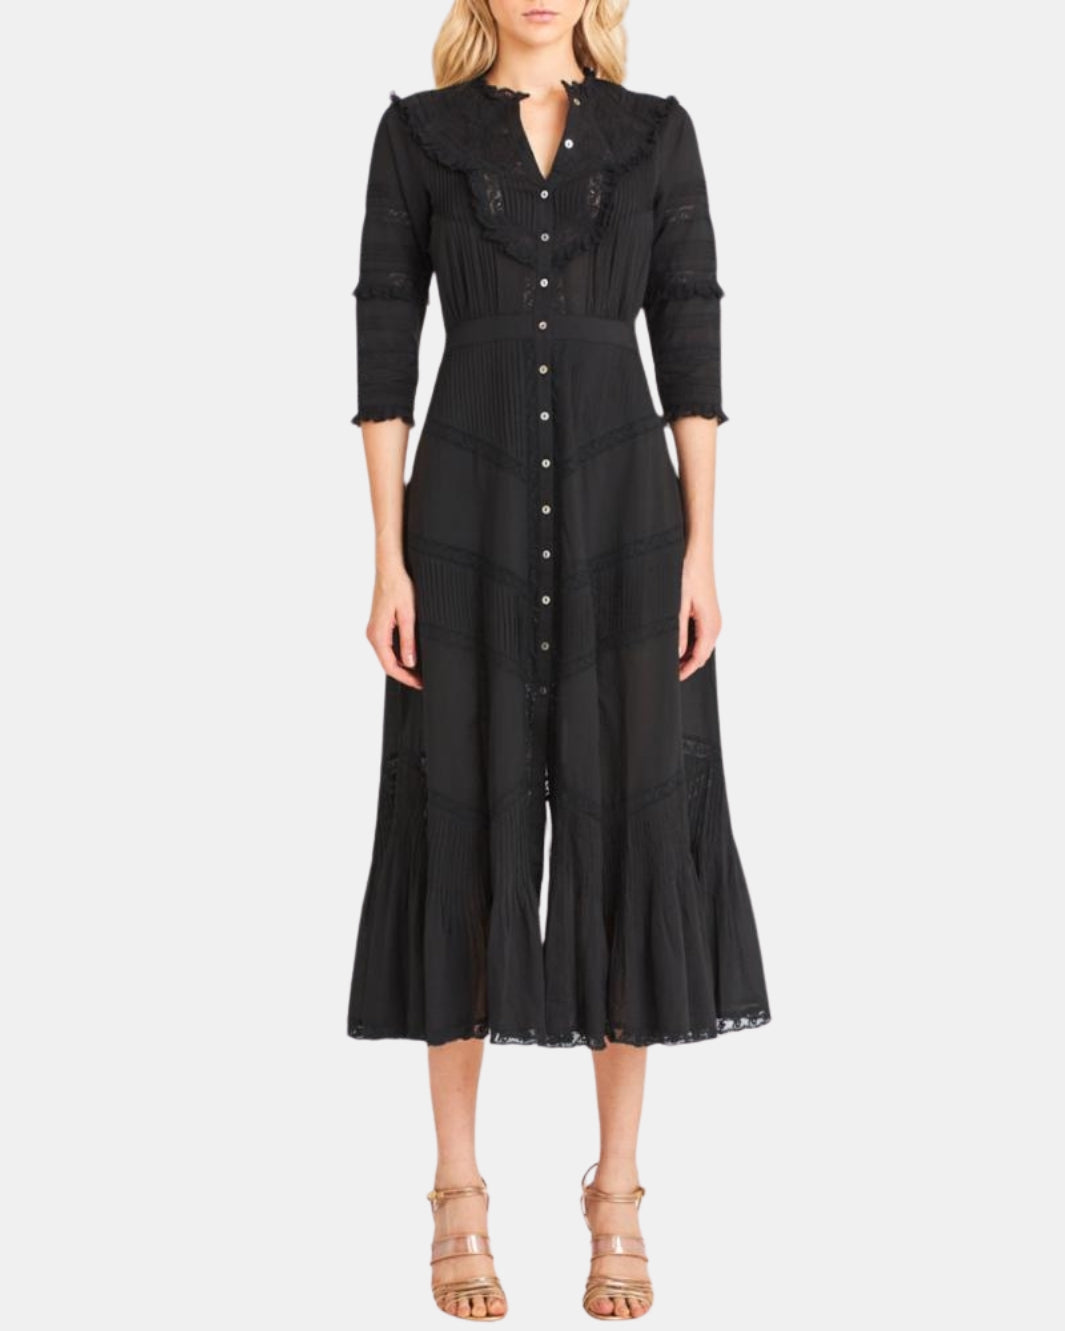 TANSU DRESS IN BLACK - Romi Boutique